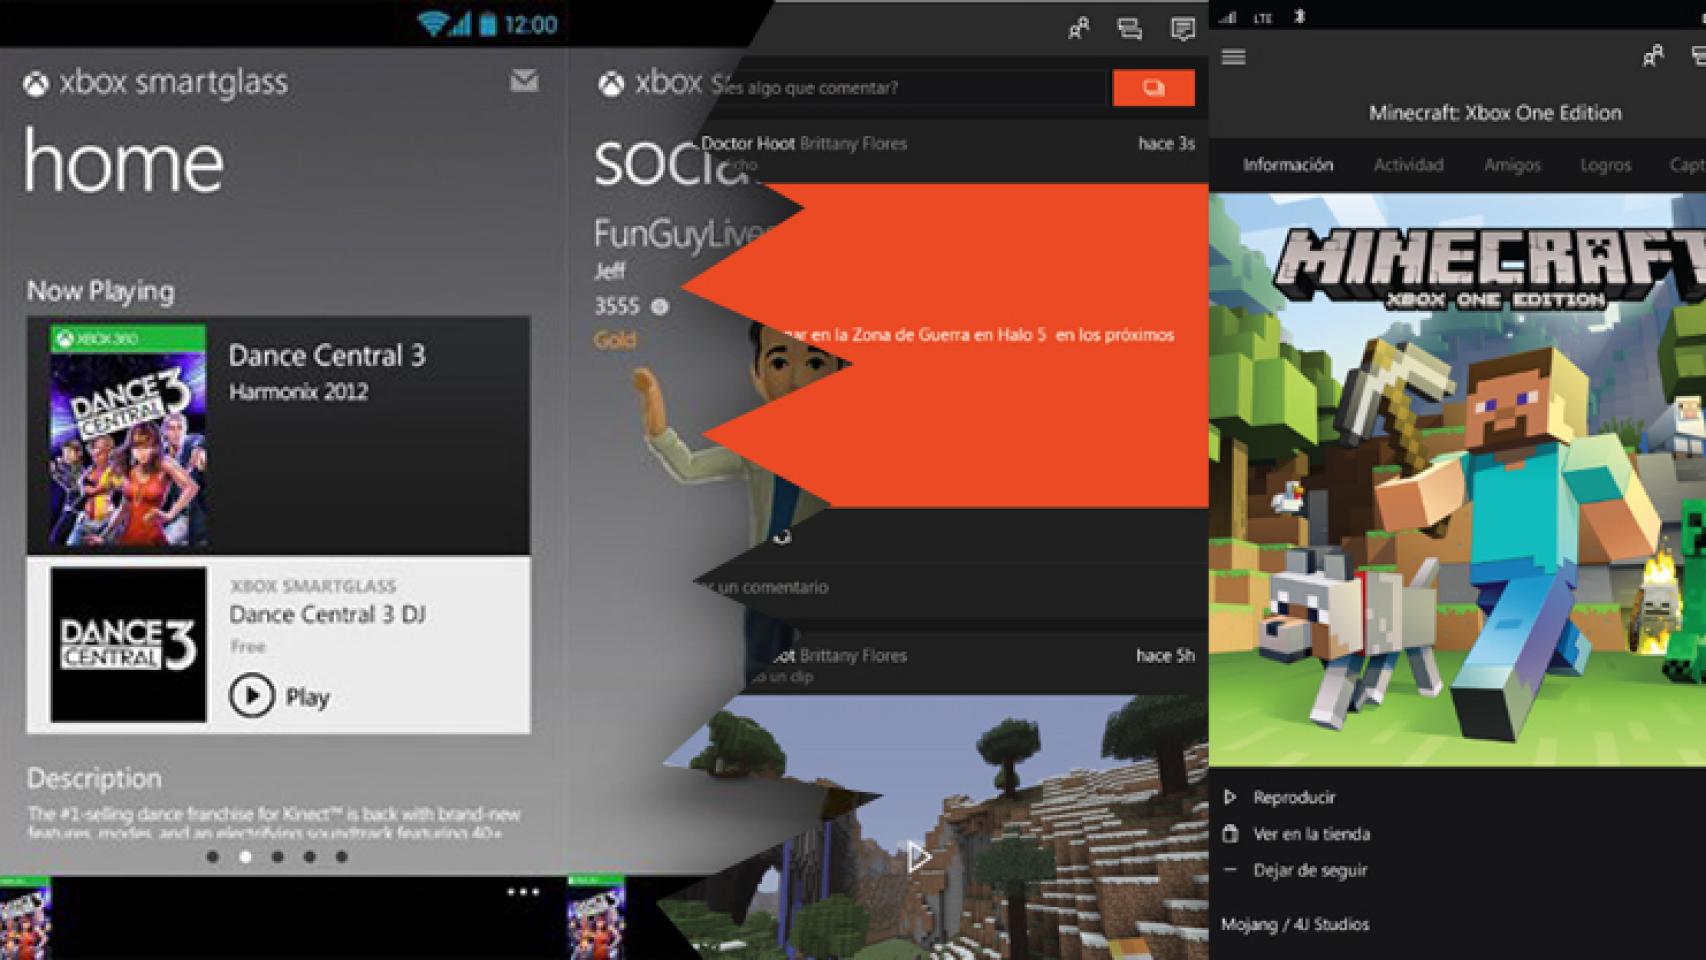 La aplicación de Xbox se actualiza: más social, cambio de nombre y diseño renovado